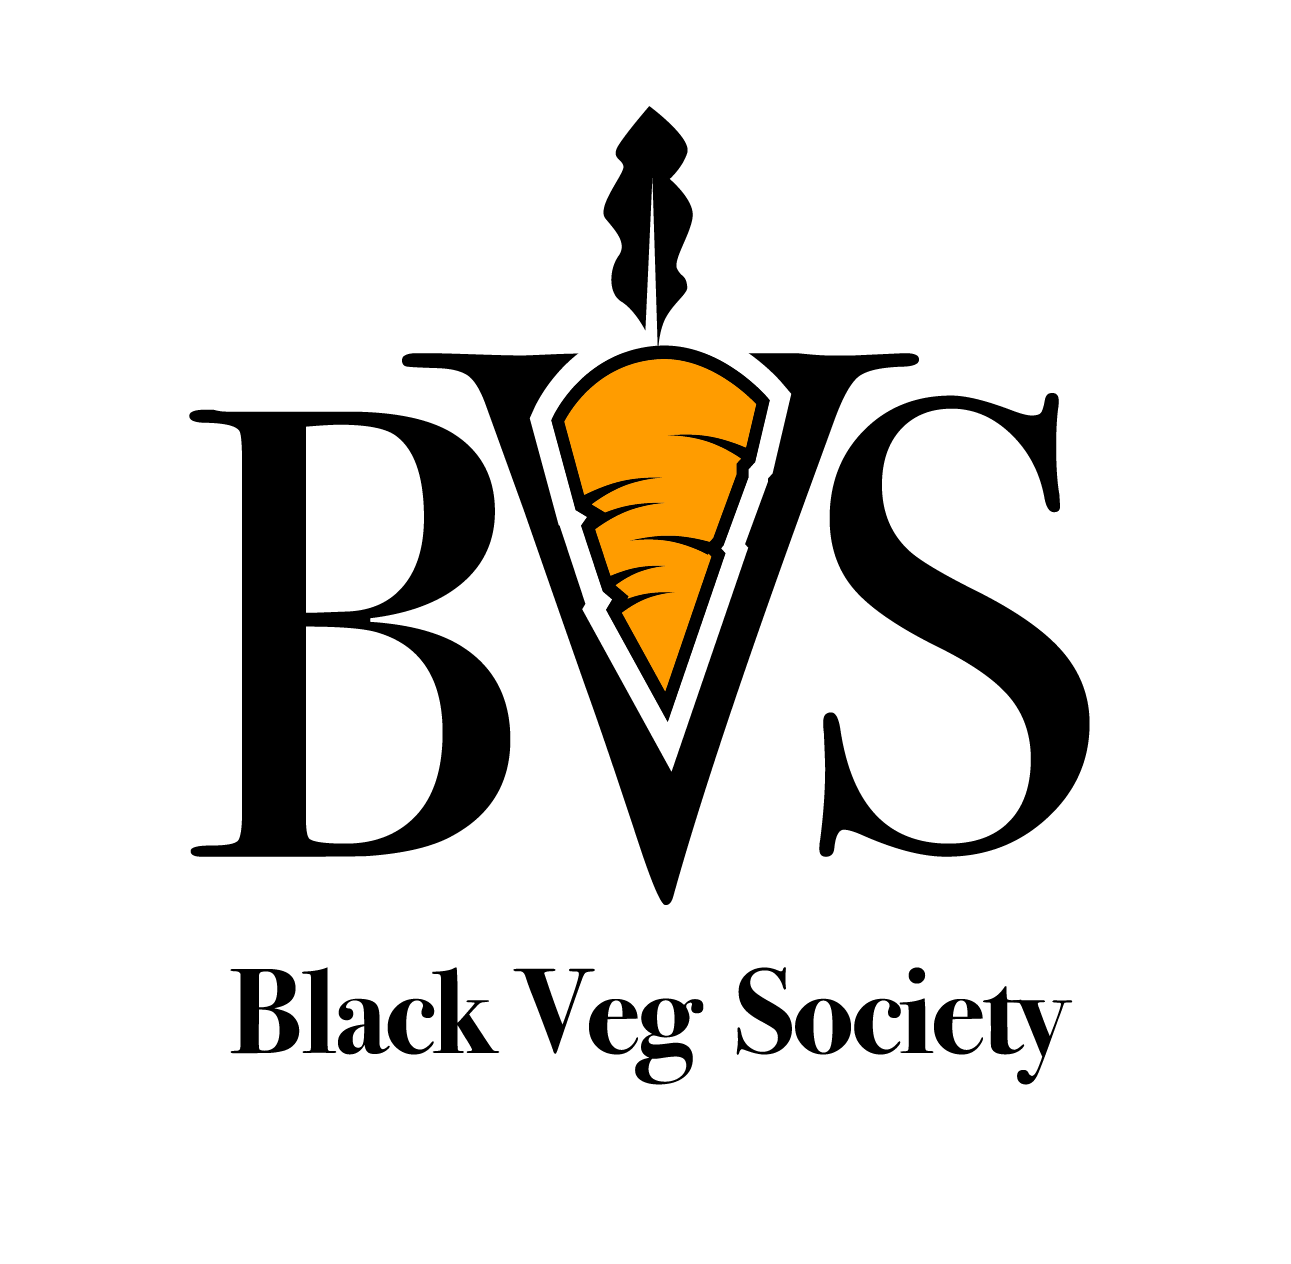 BVS-BVS Inner carrot Cap case@4x.png